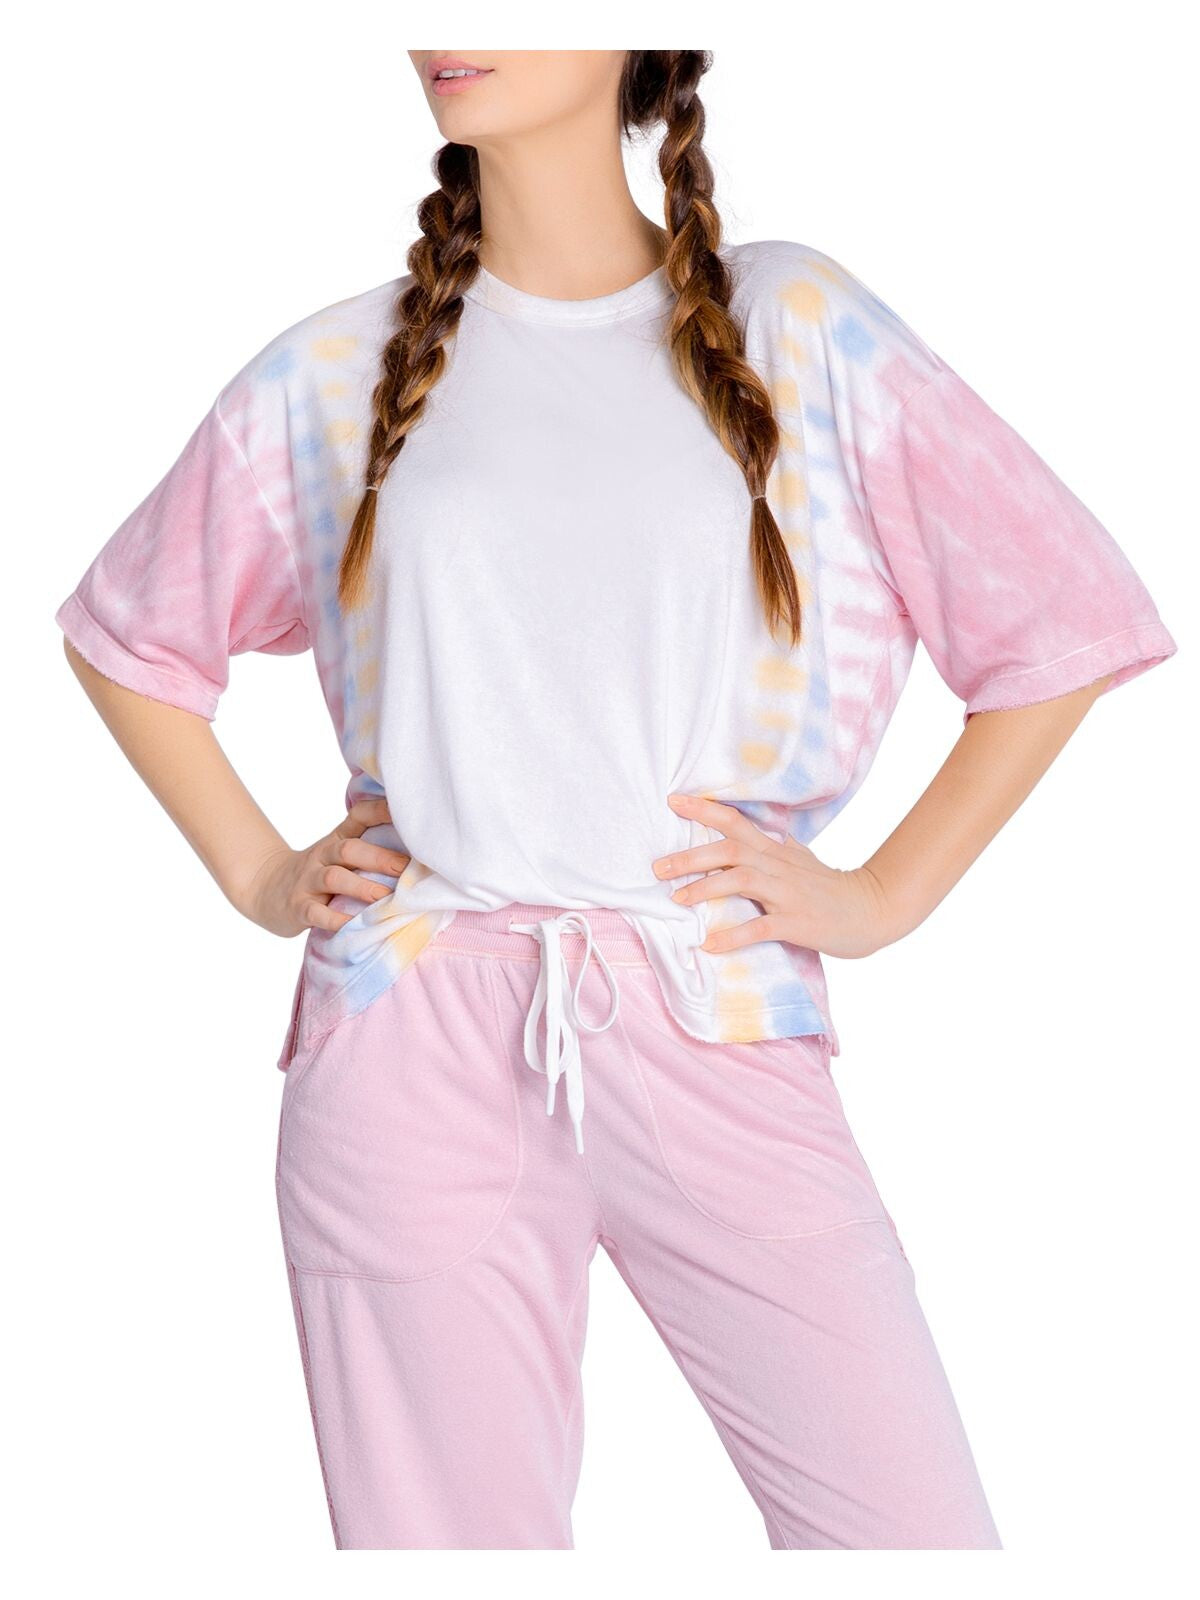 P.J. SALVAGE Intimates Ivory Knit Vented Hem Sleep Shirt Pajama Top S